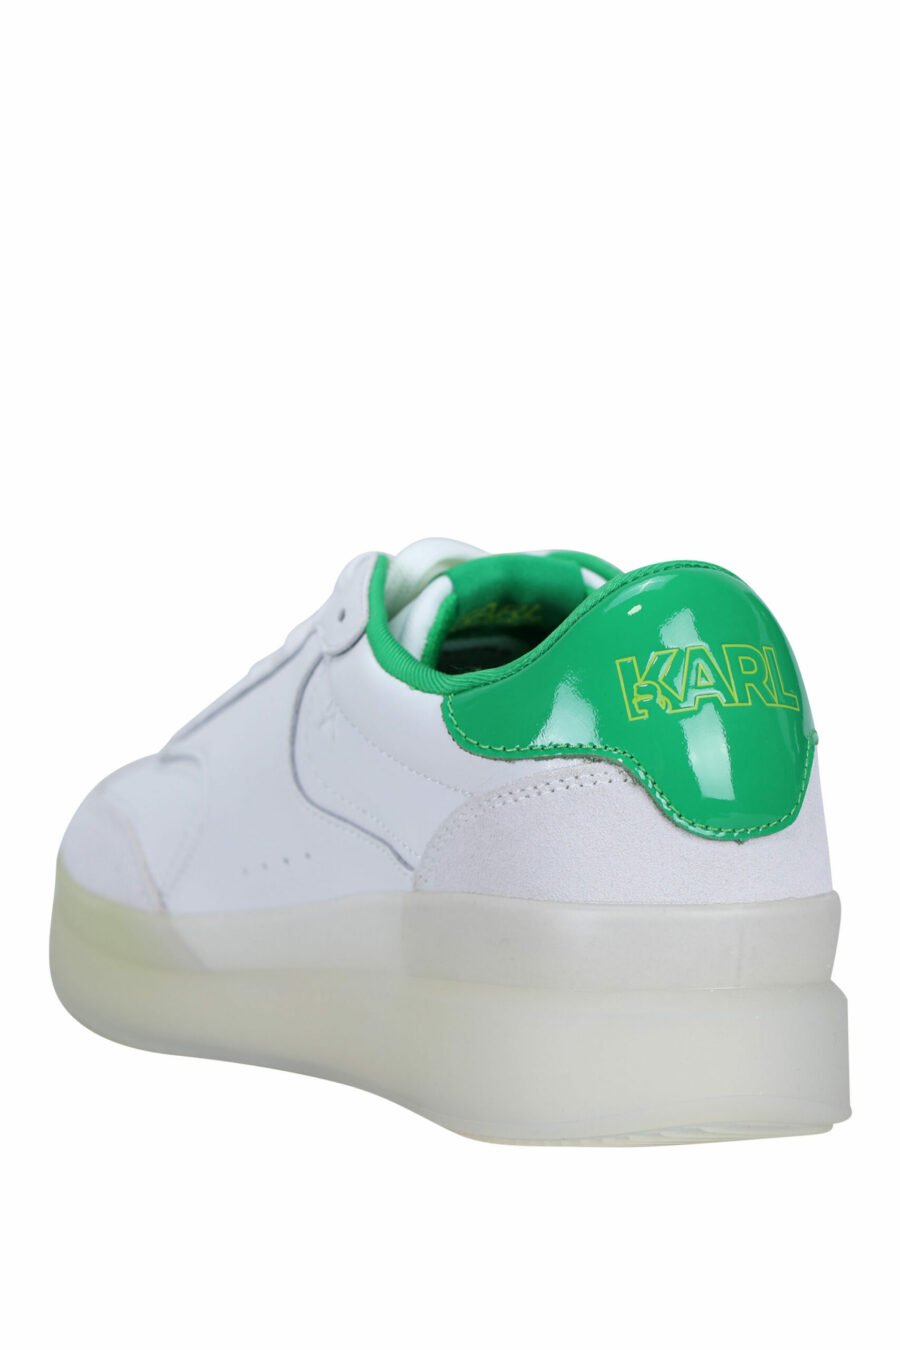 Zapatillas blancas y gris "brink" con detalles verdes - 5059529294495 3 scaled